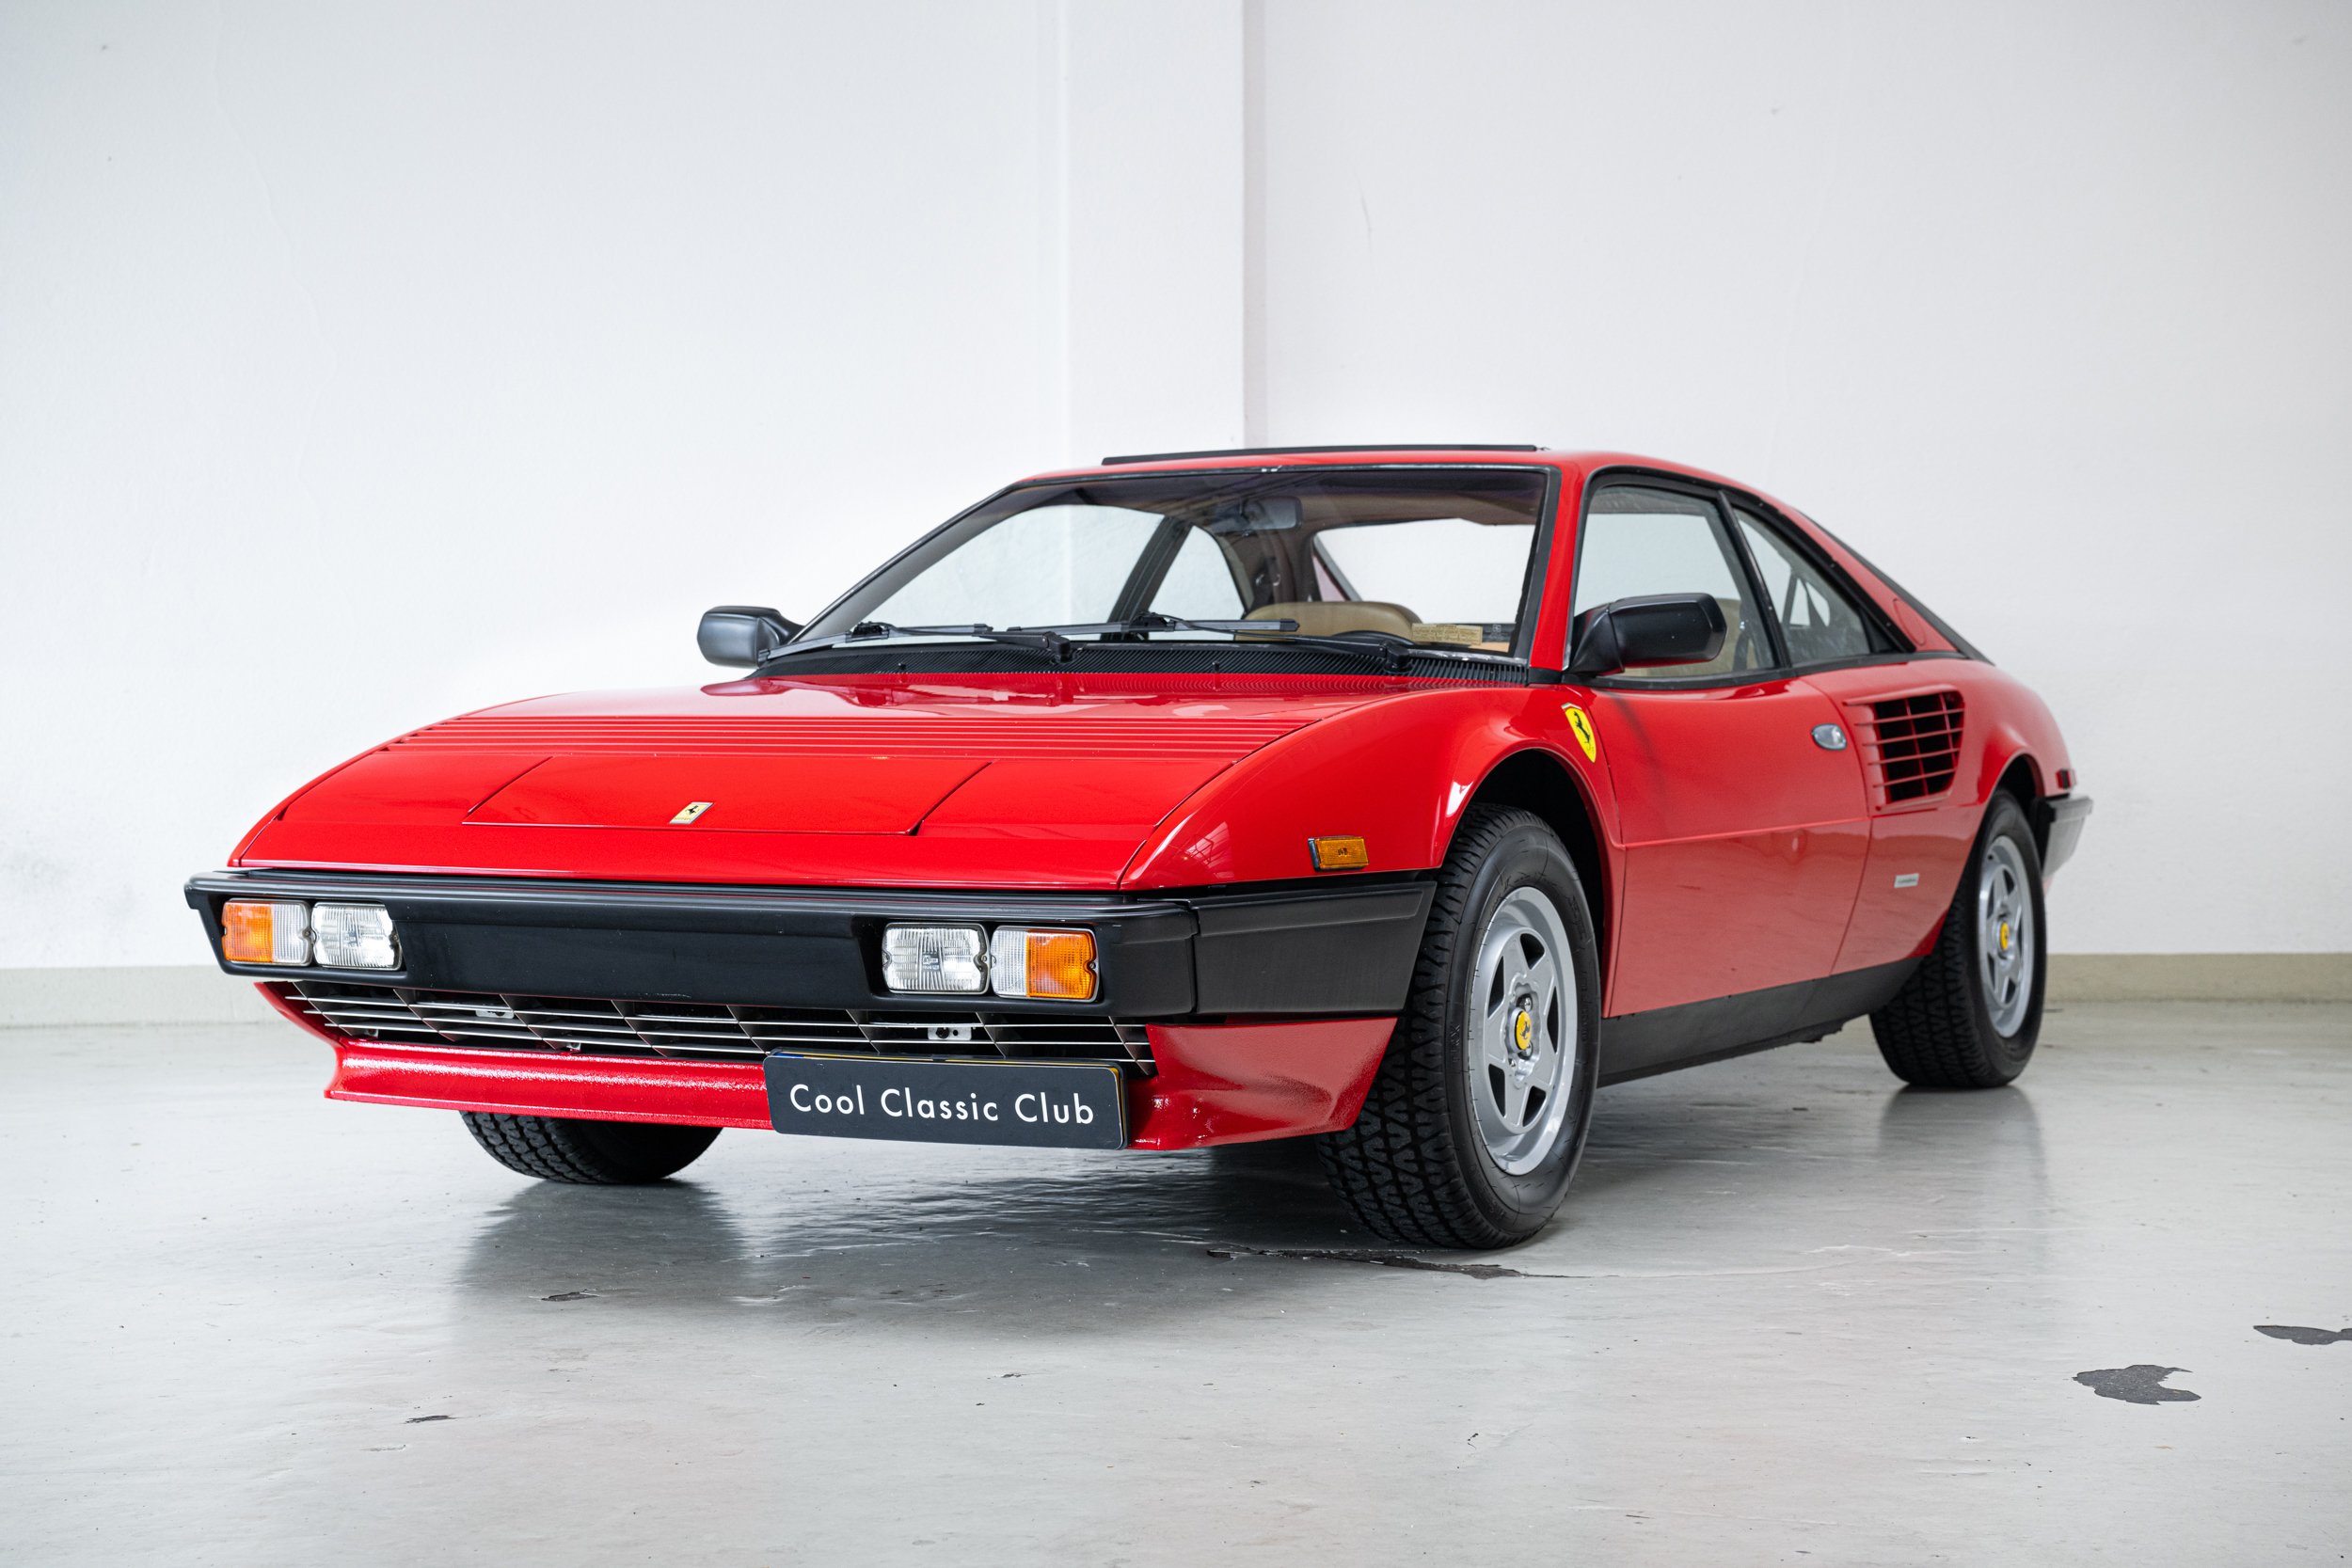 1985 Ferrari Mondial - Quattrovalvole - Low mileage